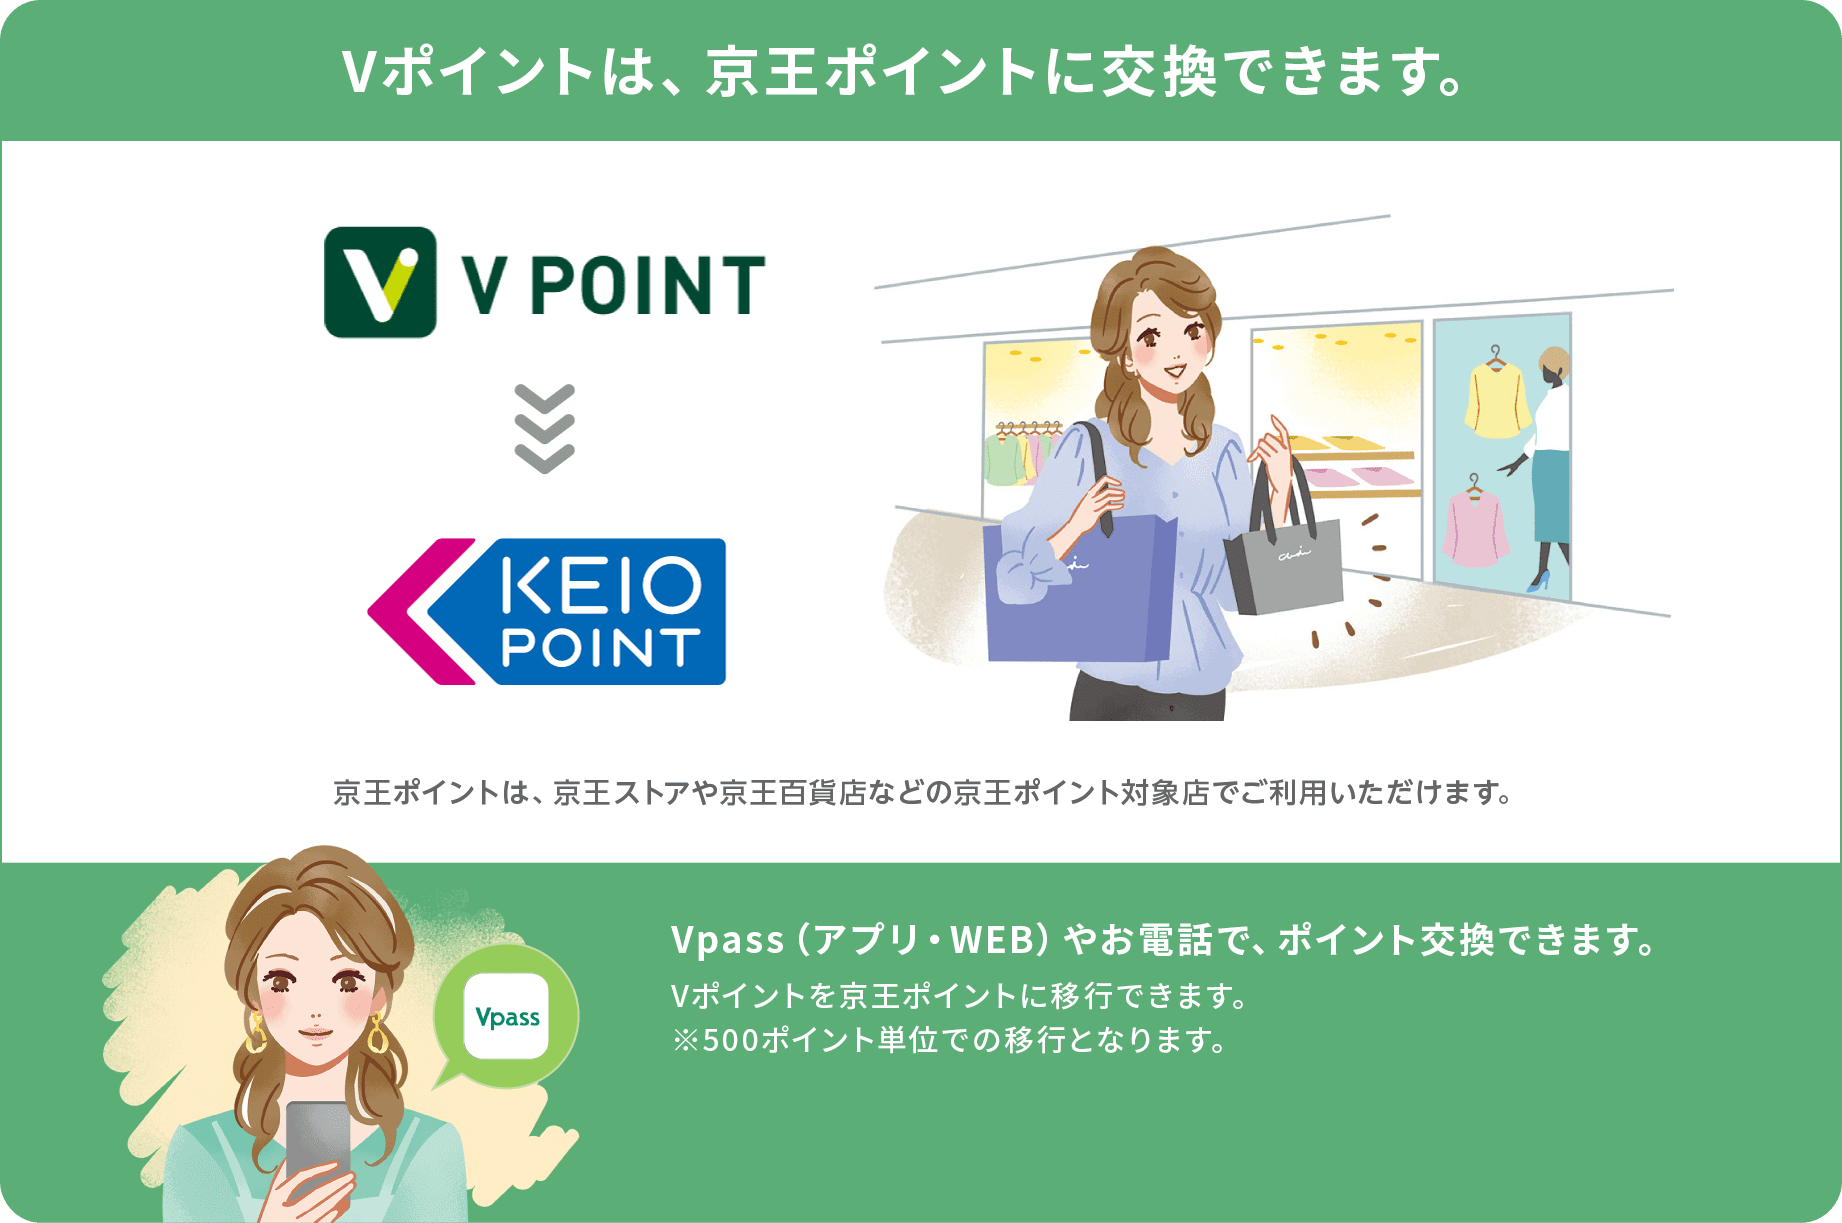 Vポイントは、京王ポイントに交換できます。